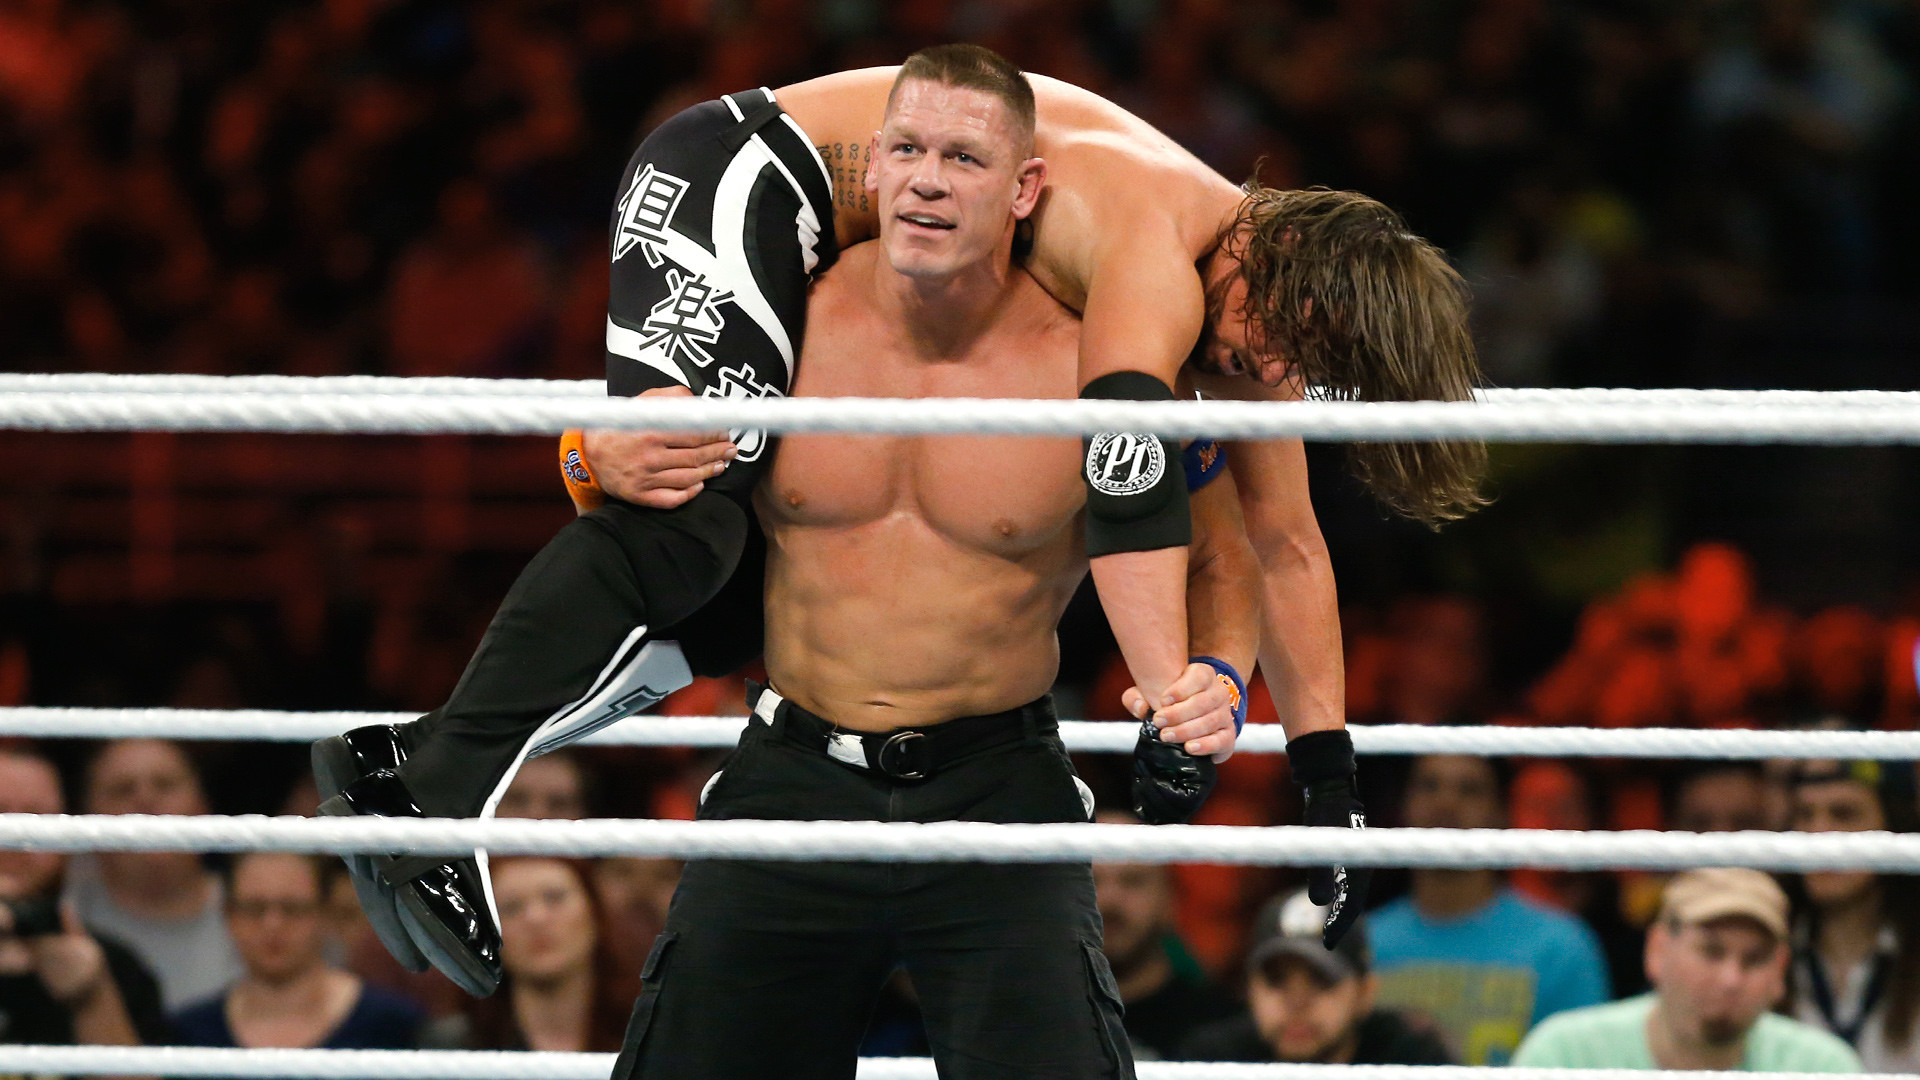 1920x1080 WWE Network: John Cena vs. AJ Styles - WWE Title Match: Royal Rumble 2017 |  WWE